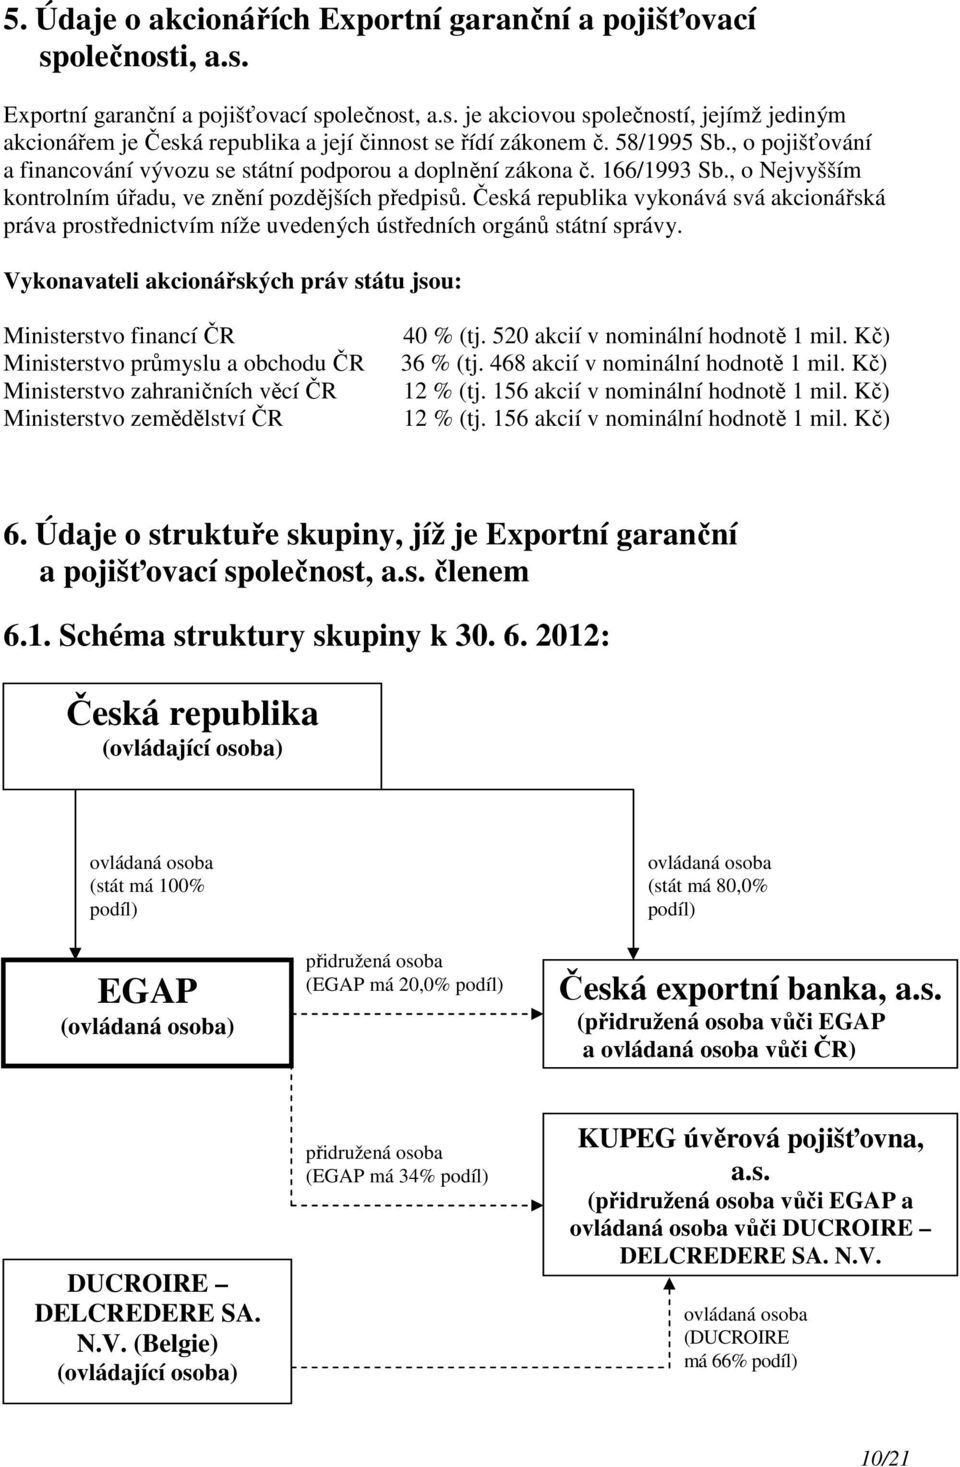 Česká republika vykonává svá akcionářská práva prostřednictvím níže uvedených ústředních orgánů státní správy.